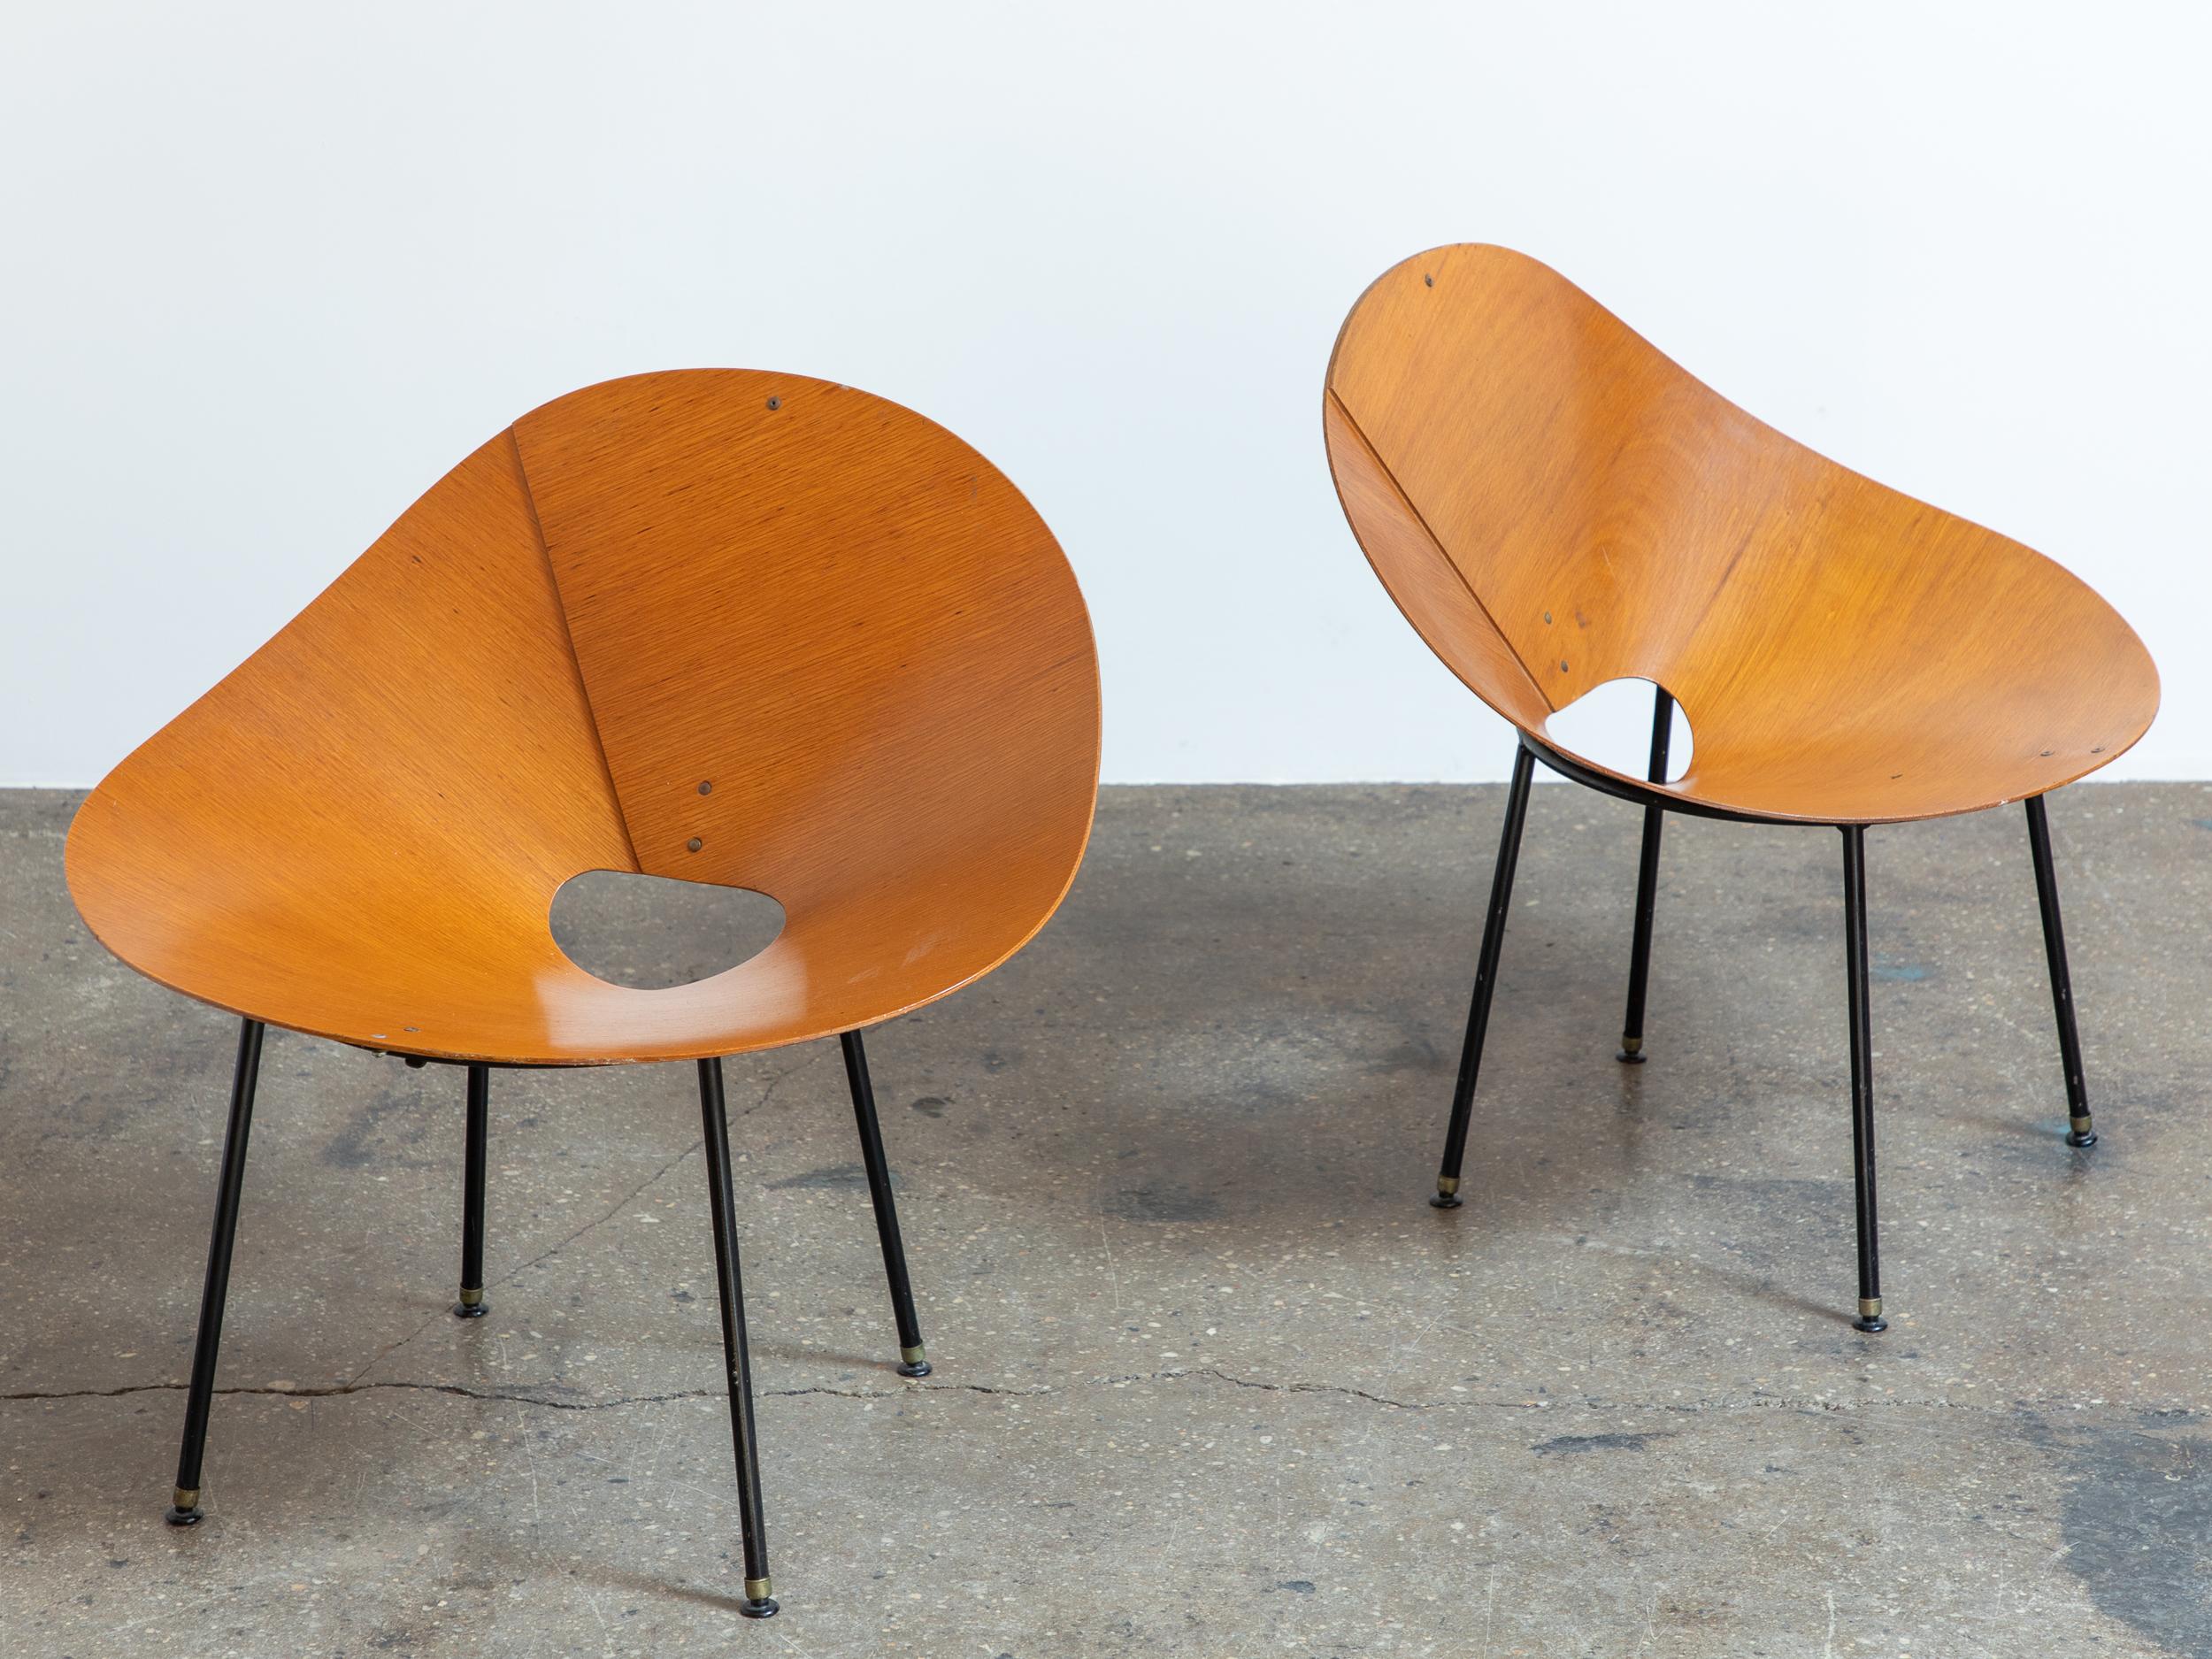 Chaises longues Kone rares, conçues par le designer industriel australien Roger McLay. Le siège est formé d'une seule feuille de contreplaqué, pliée en forme de cône élégant. Le cadre en acier noir offre un support solide.  Ces chaises, qui